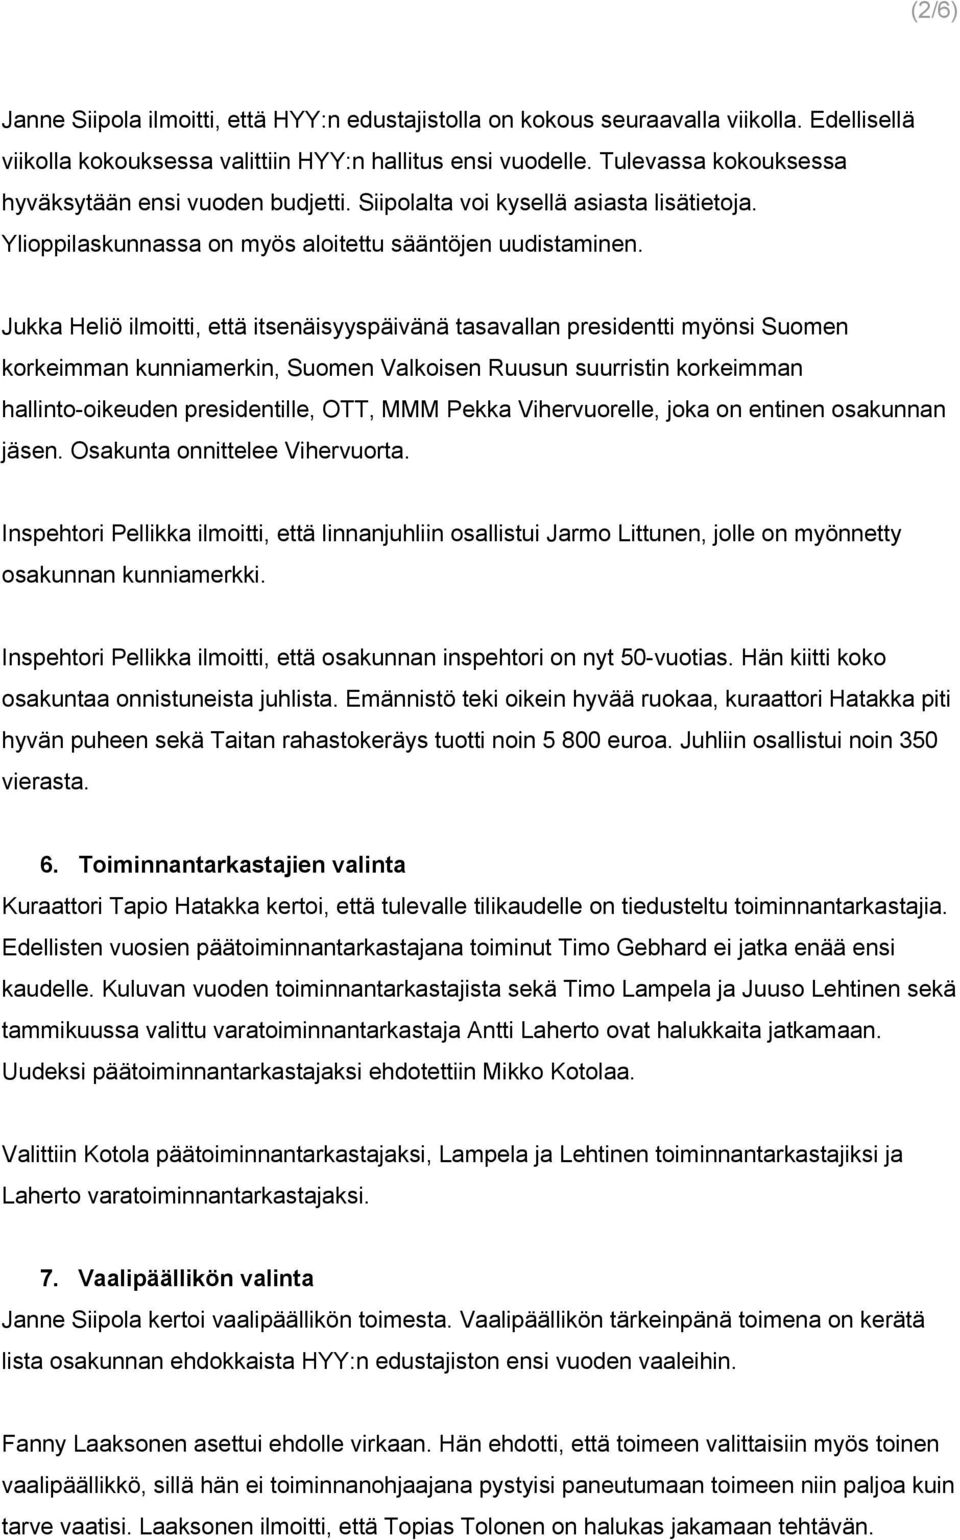 Jukka Heliö ilmoitti, että itsenäisyyspäivänä tasavallan presidentti myönsi Suomen korkeimman kunniamerkin, Suomen Valkoisen Ruusun suurristin korkeimman hallinto oikeuden presidentille, OTT, MMM